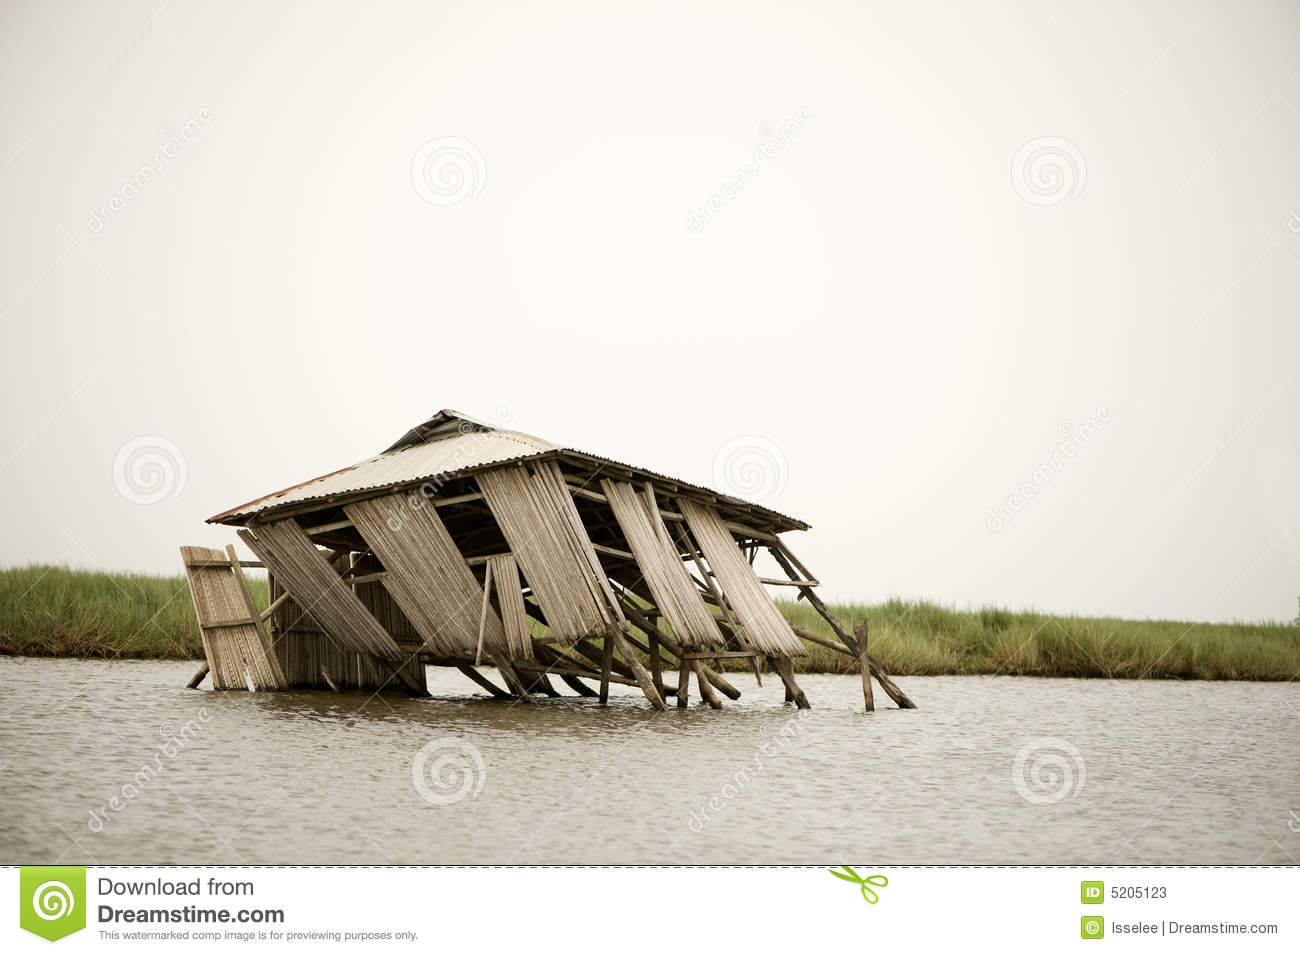 collapsed-stilt-house-5205123.jpg